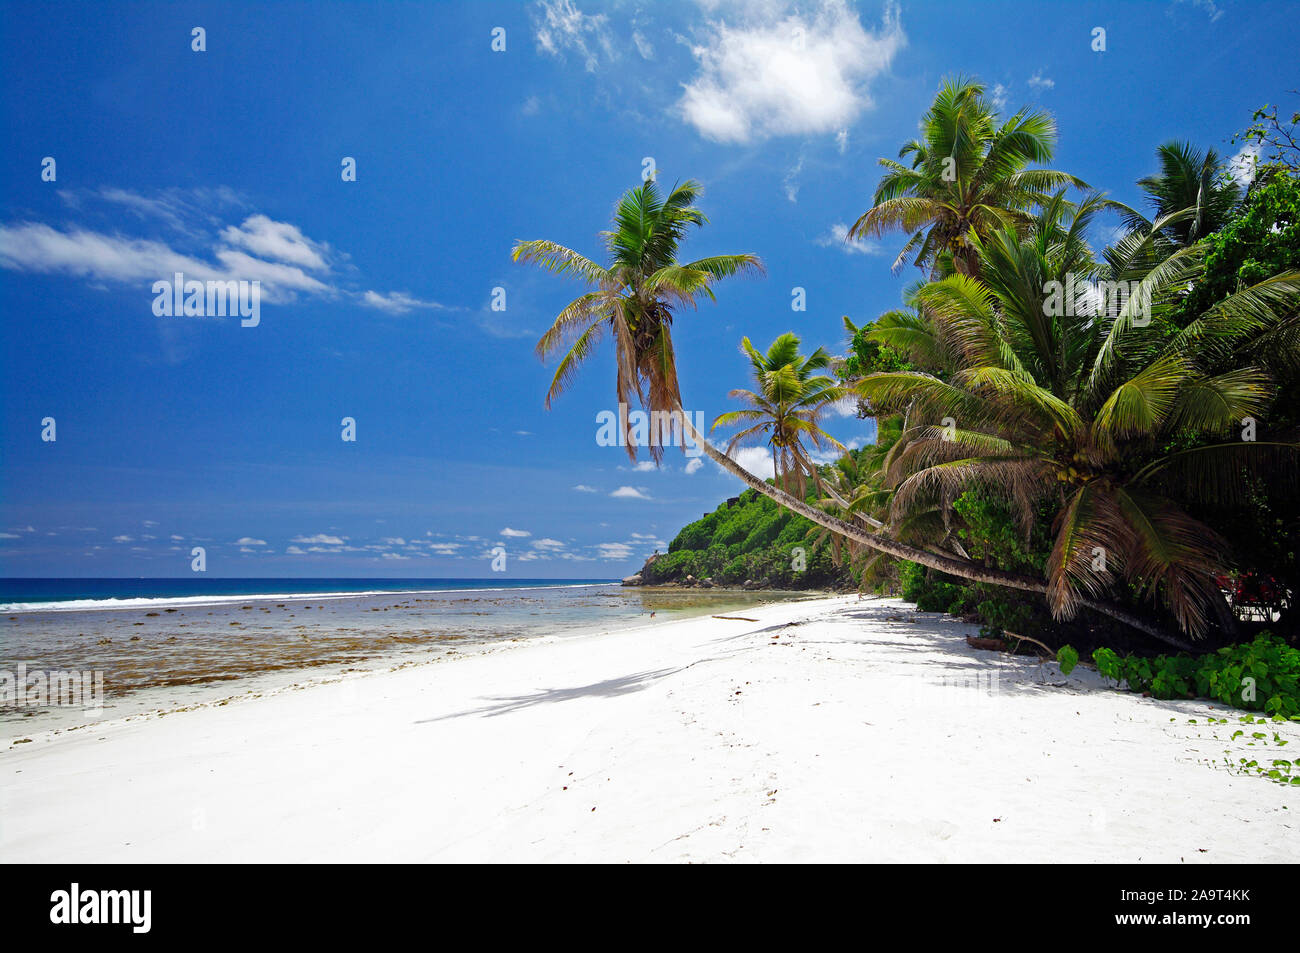 Offenburg am sandigen Strand von Anse Parnel, Tropisches Paradies an der Südost Küste von Mahe, Hauptinsel der Seychellen Foto Stock